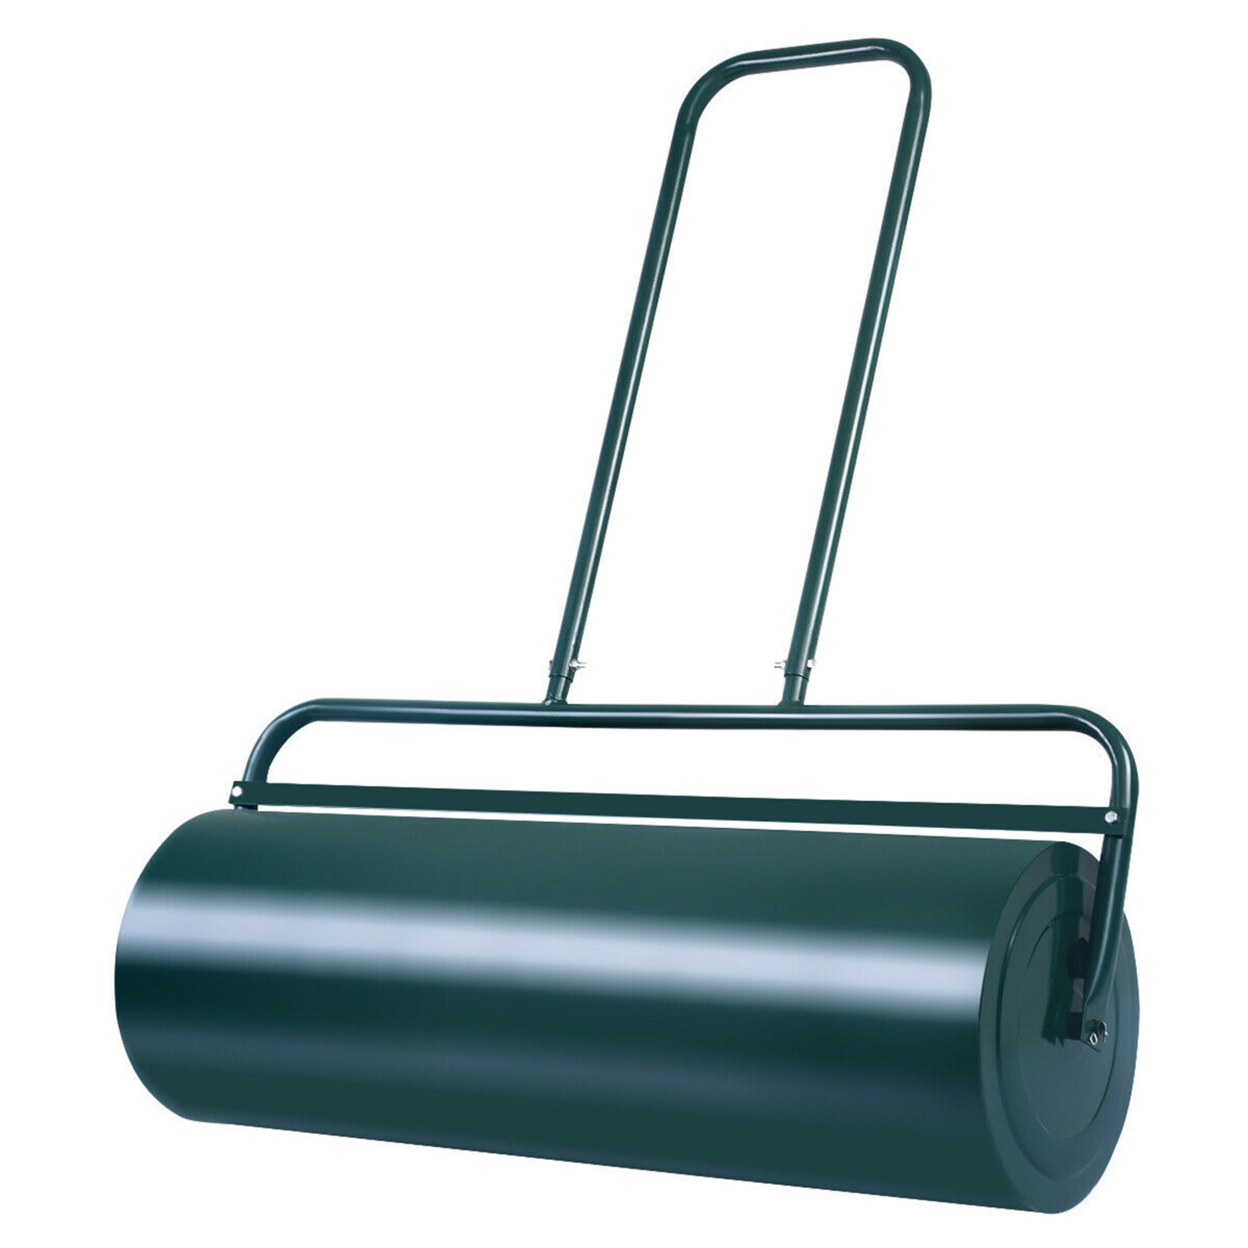 17-Gallon Lawn Roller Heavy-Duty Steel Push/Pull Sod Roller 36'' X 12'' Green